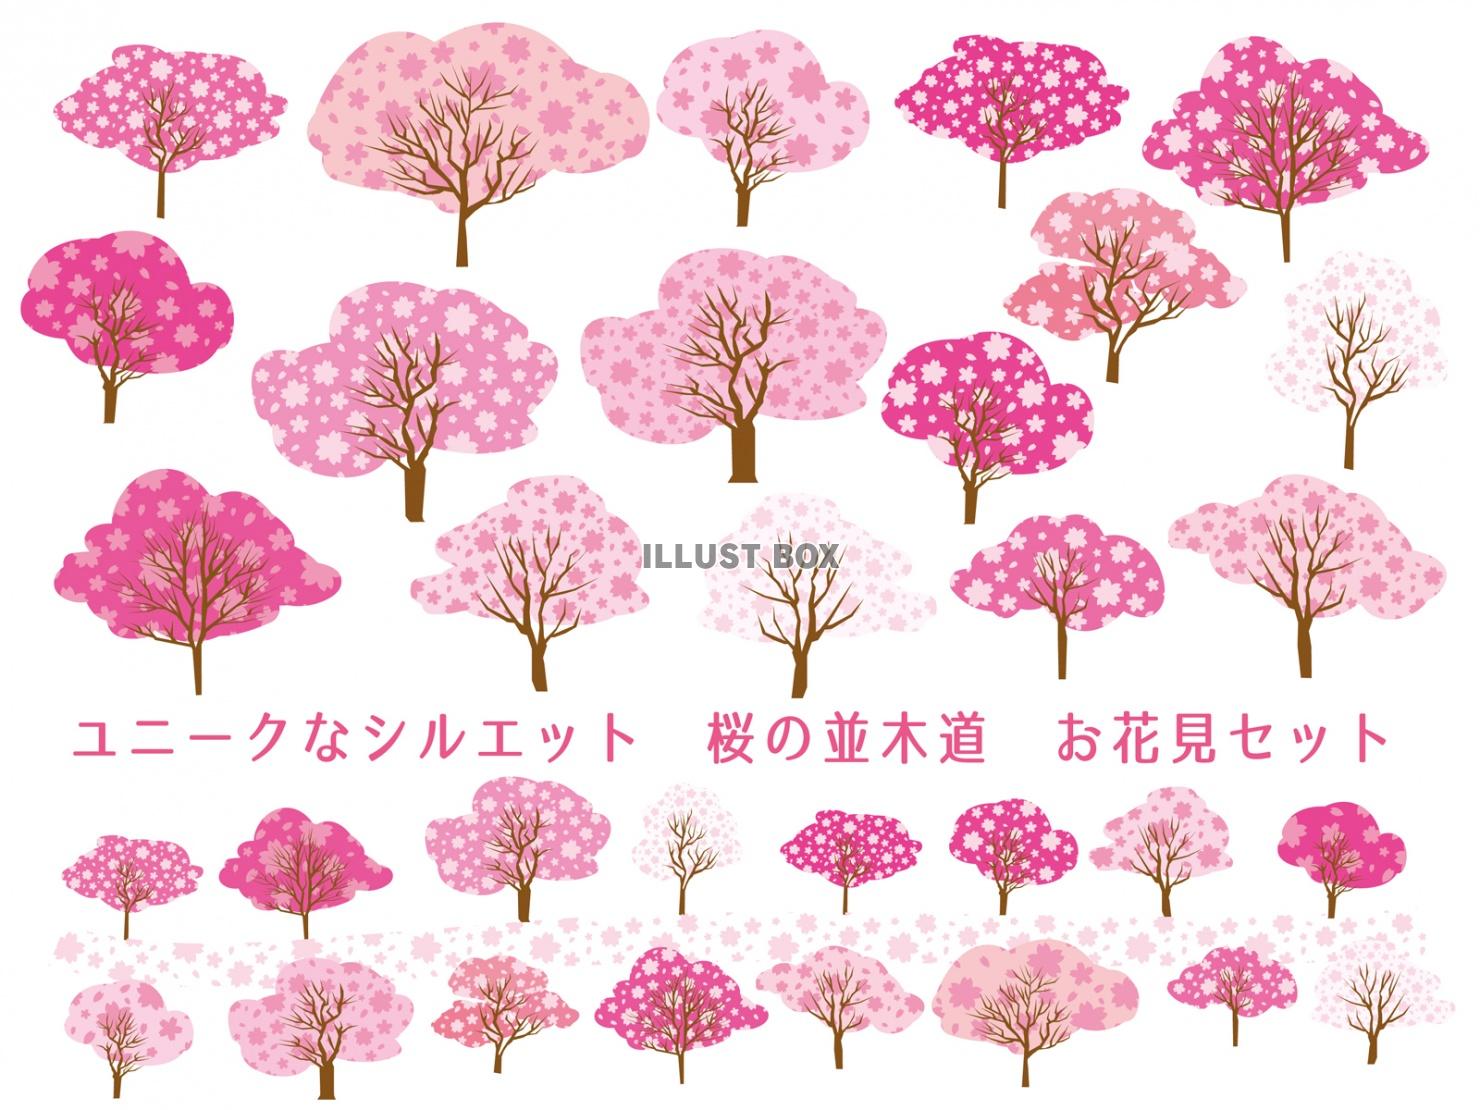 無料イラスト サクラの木並木道満開お花見ピンク色さくらシルエット無料イラス